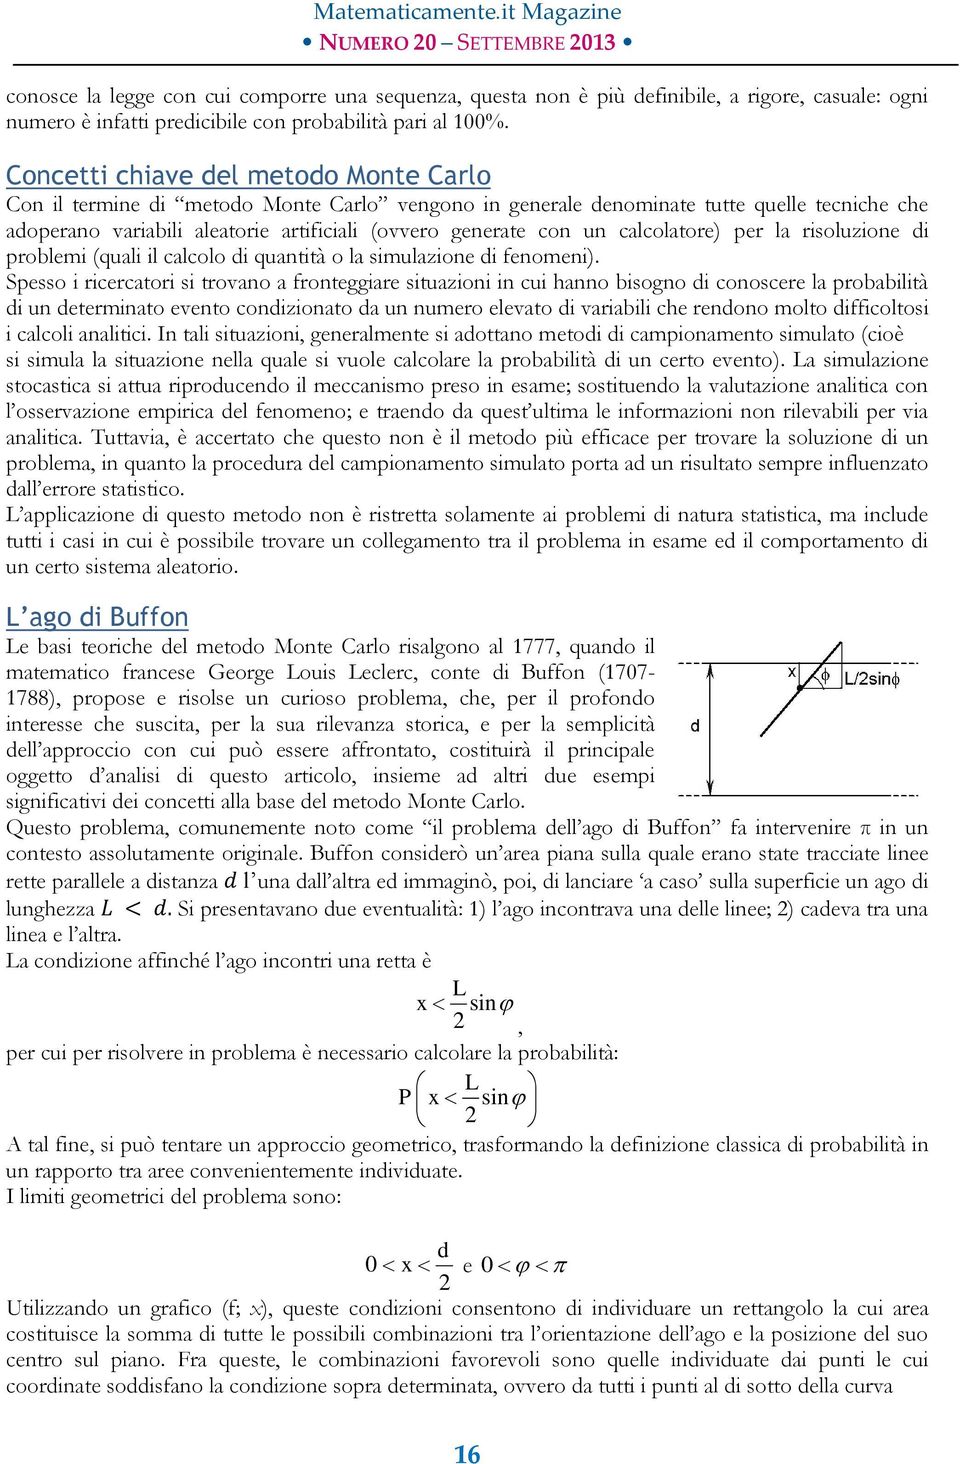 calcolatore) per la risoluzione di problemi (quali il calcolo di quantità o la simulazione di fenomeni).